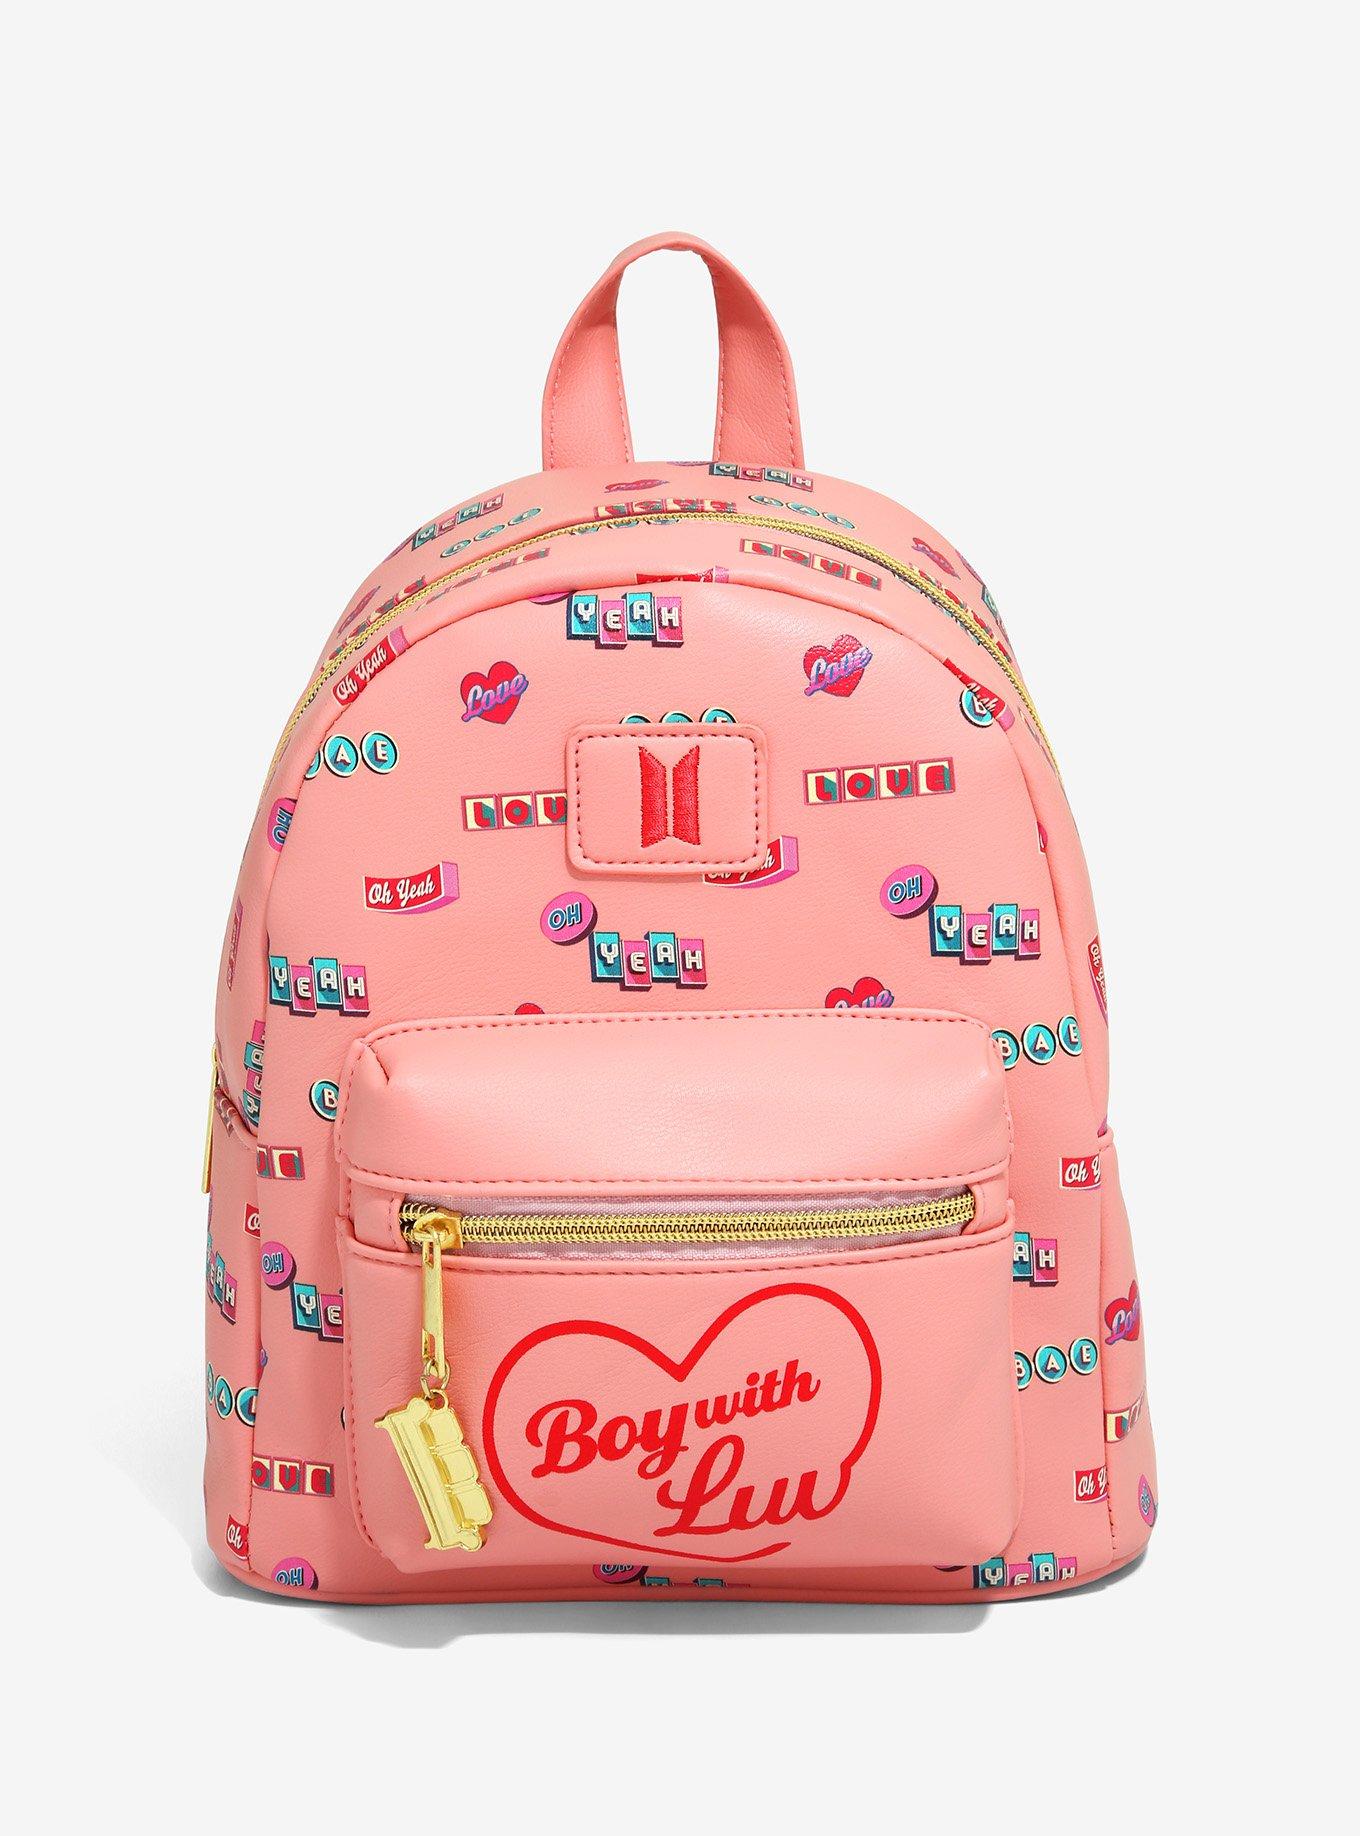 Buy Kpop BTS Backpack Bag Bookbag College Bag Travel Bag BTS